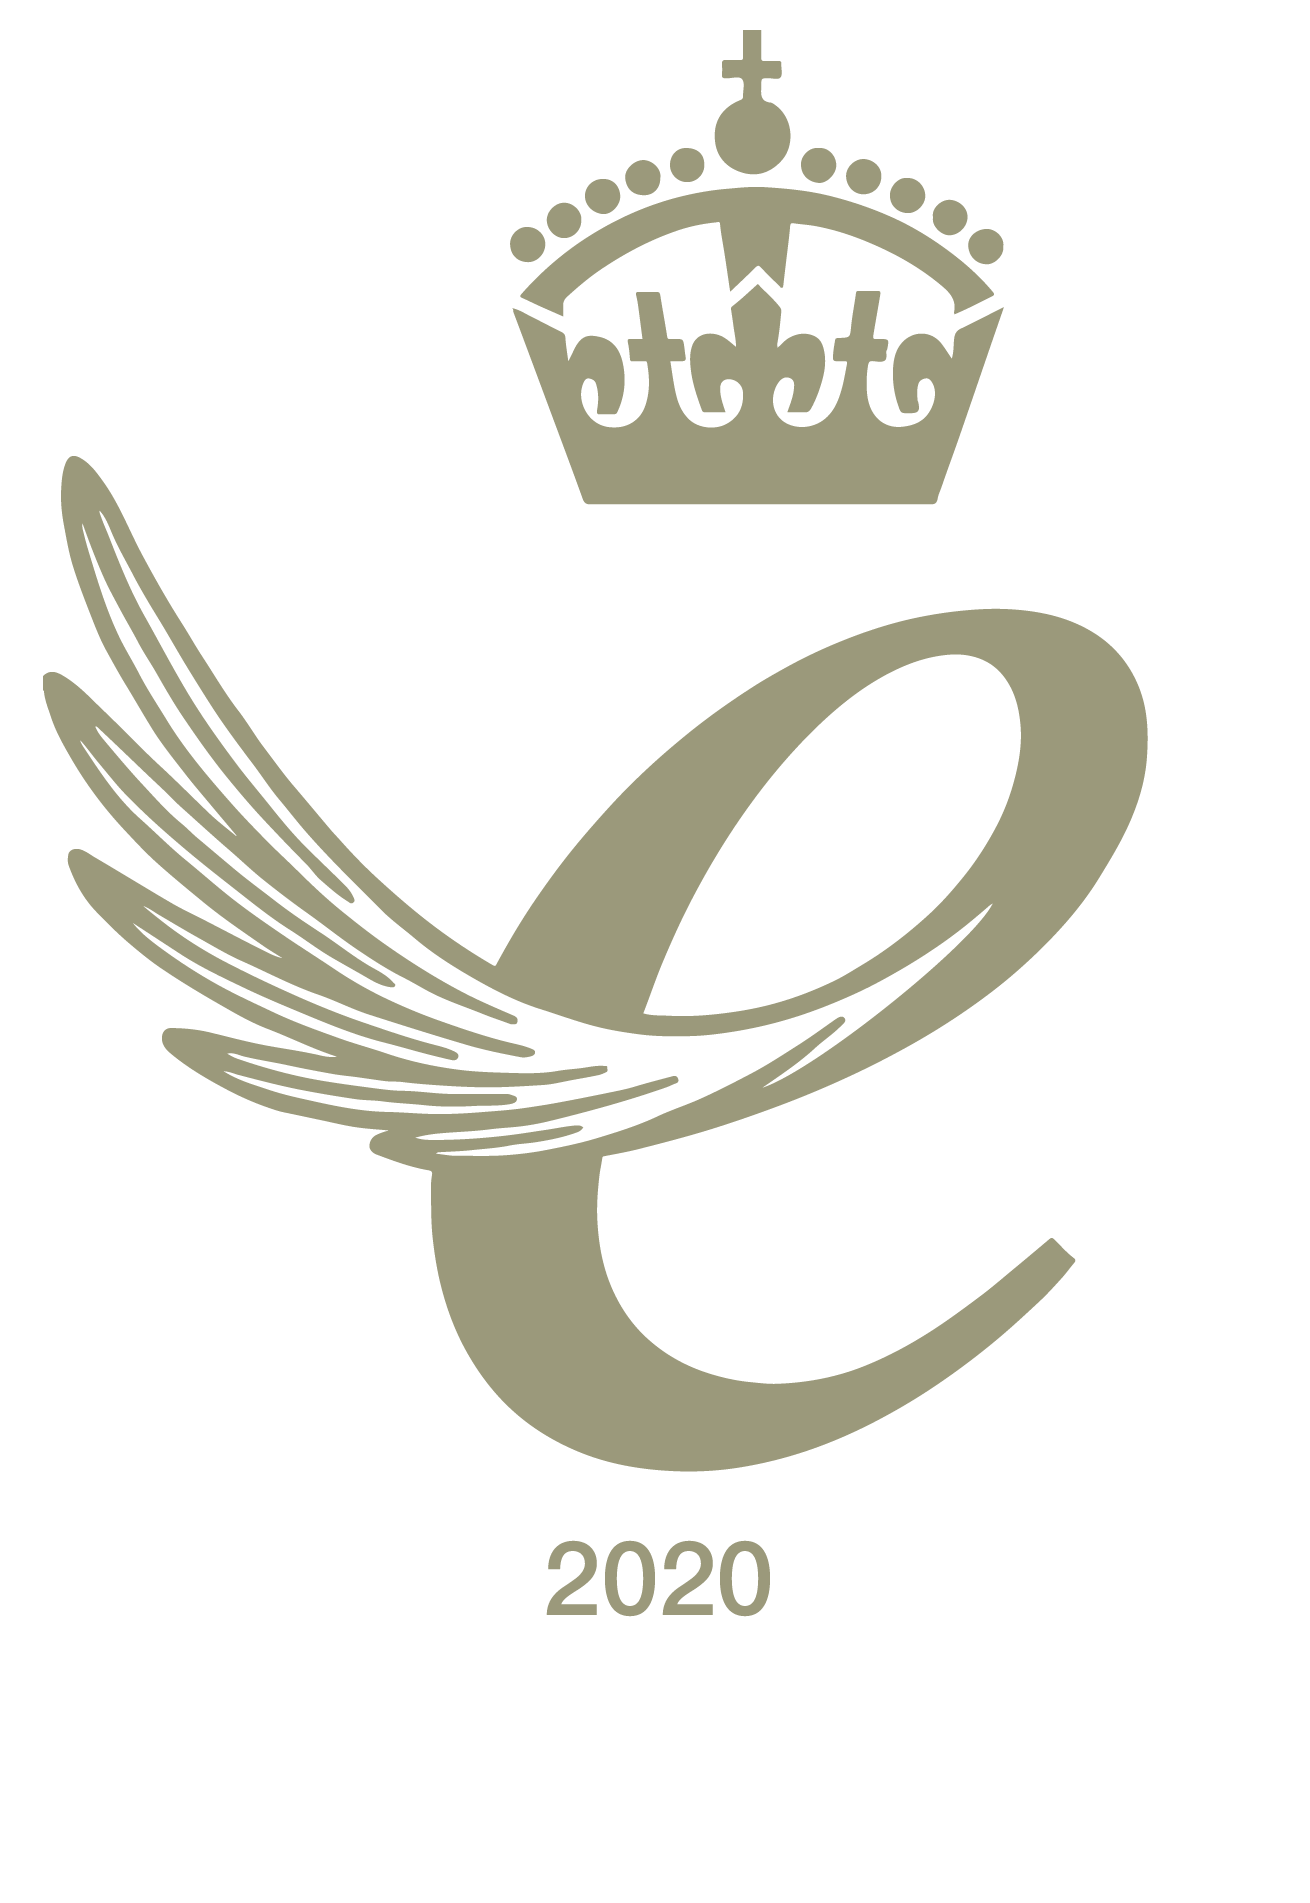 Queen's Award for Enterprise 2022